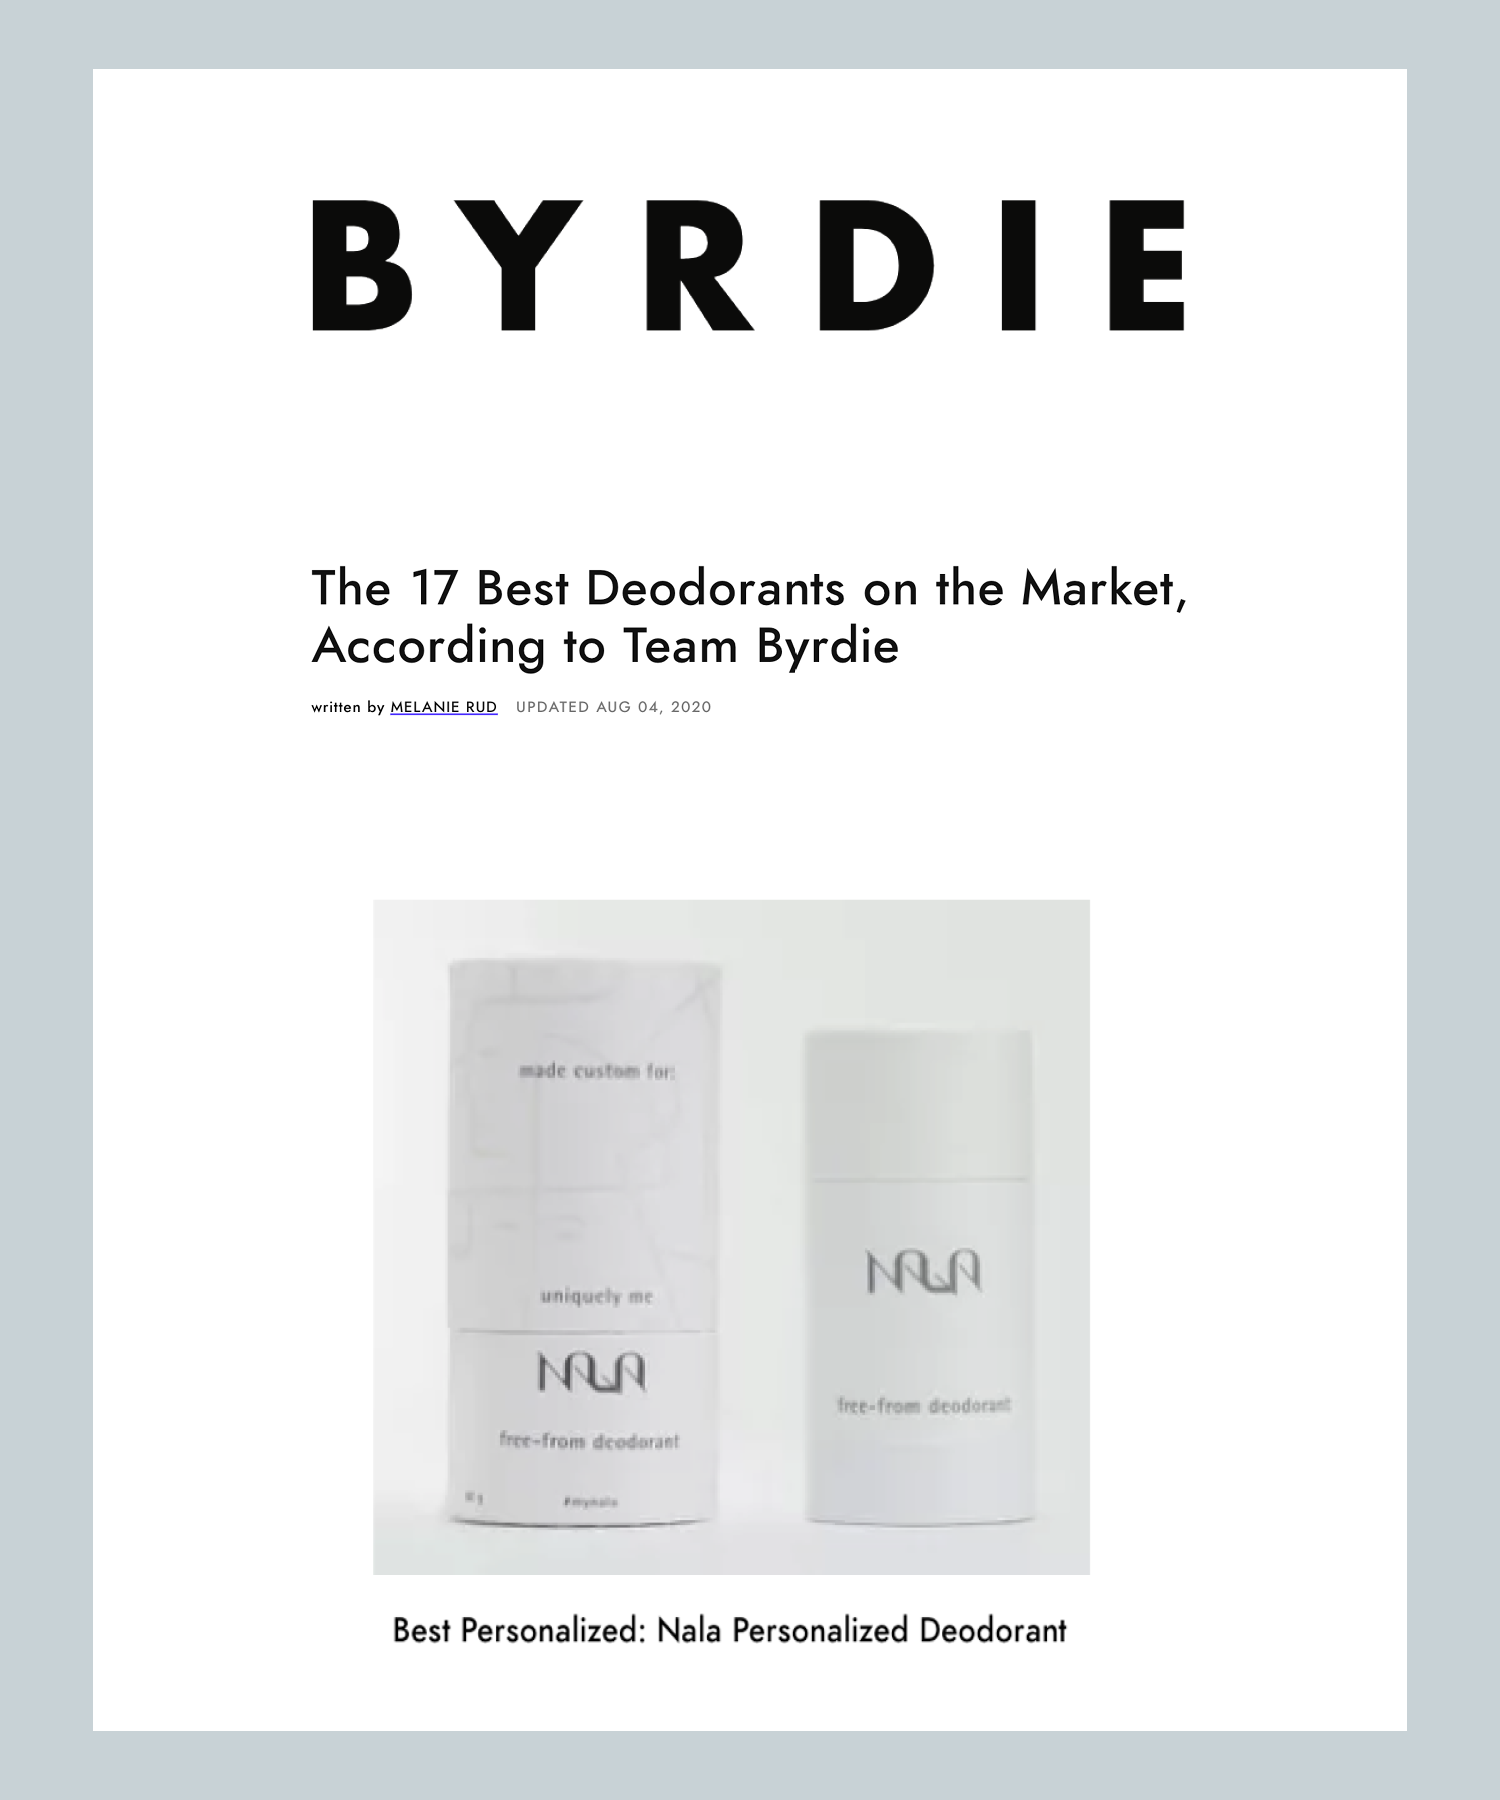 The 17 Best Deodorants on the Market, According to Team Byrdie